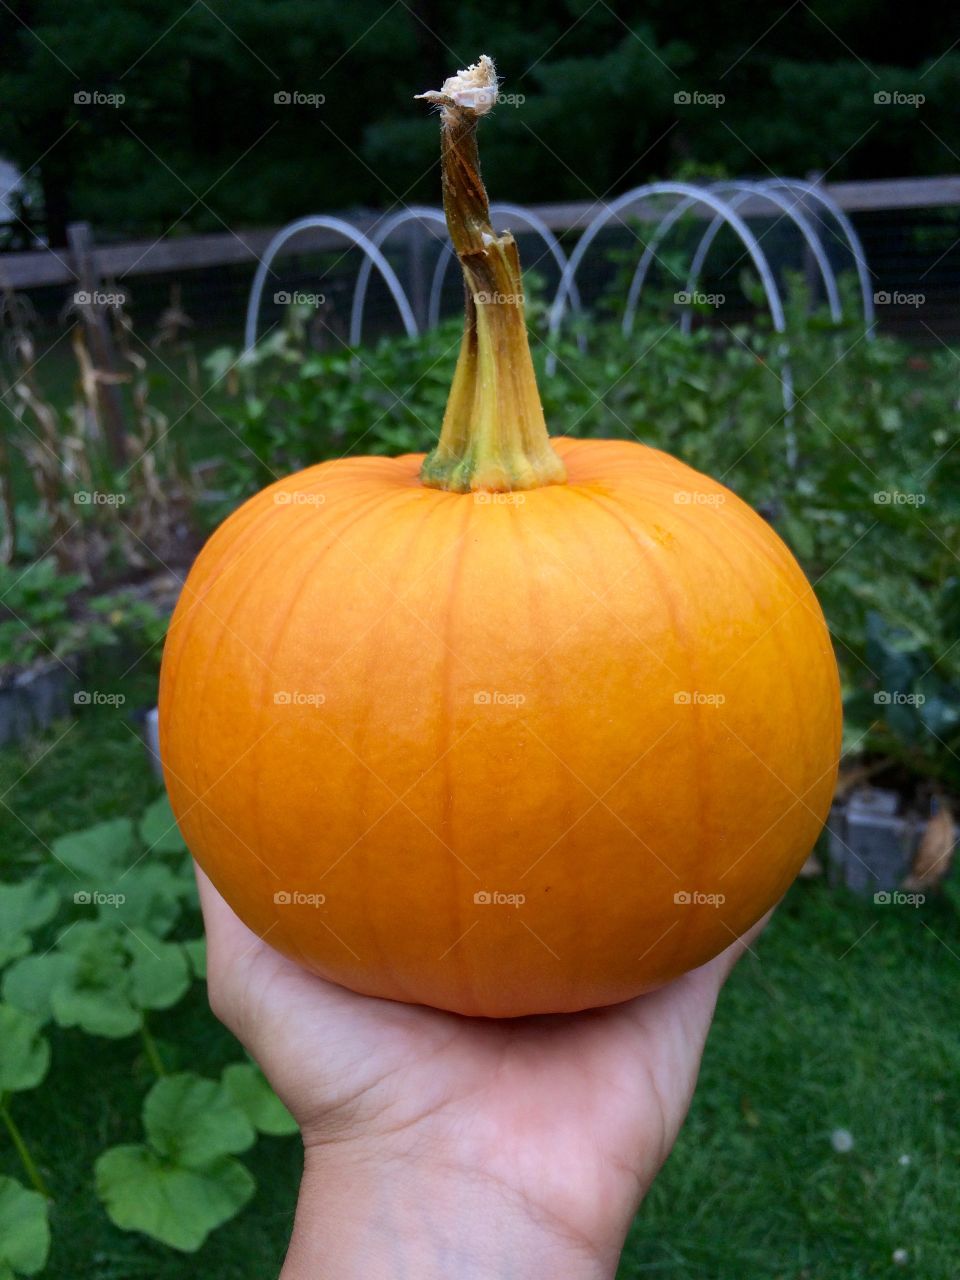 1st pumpkin